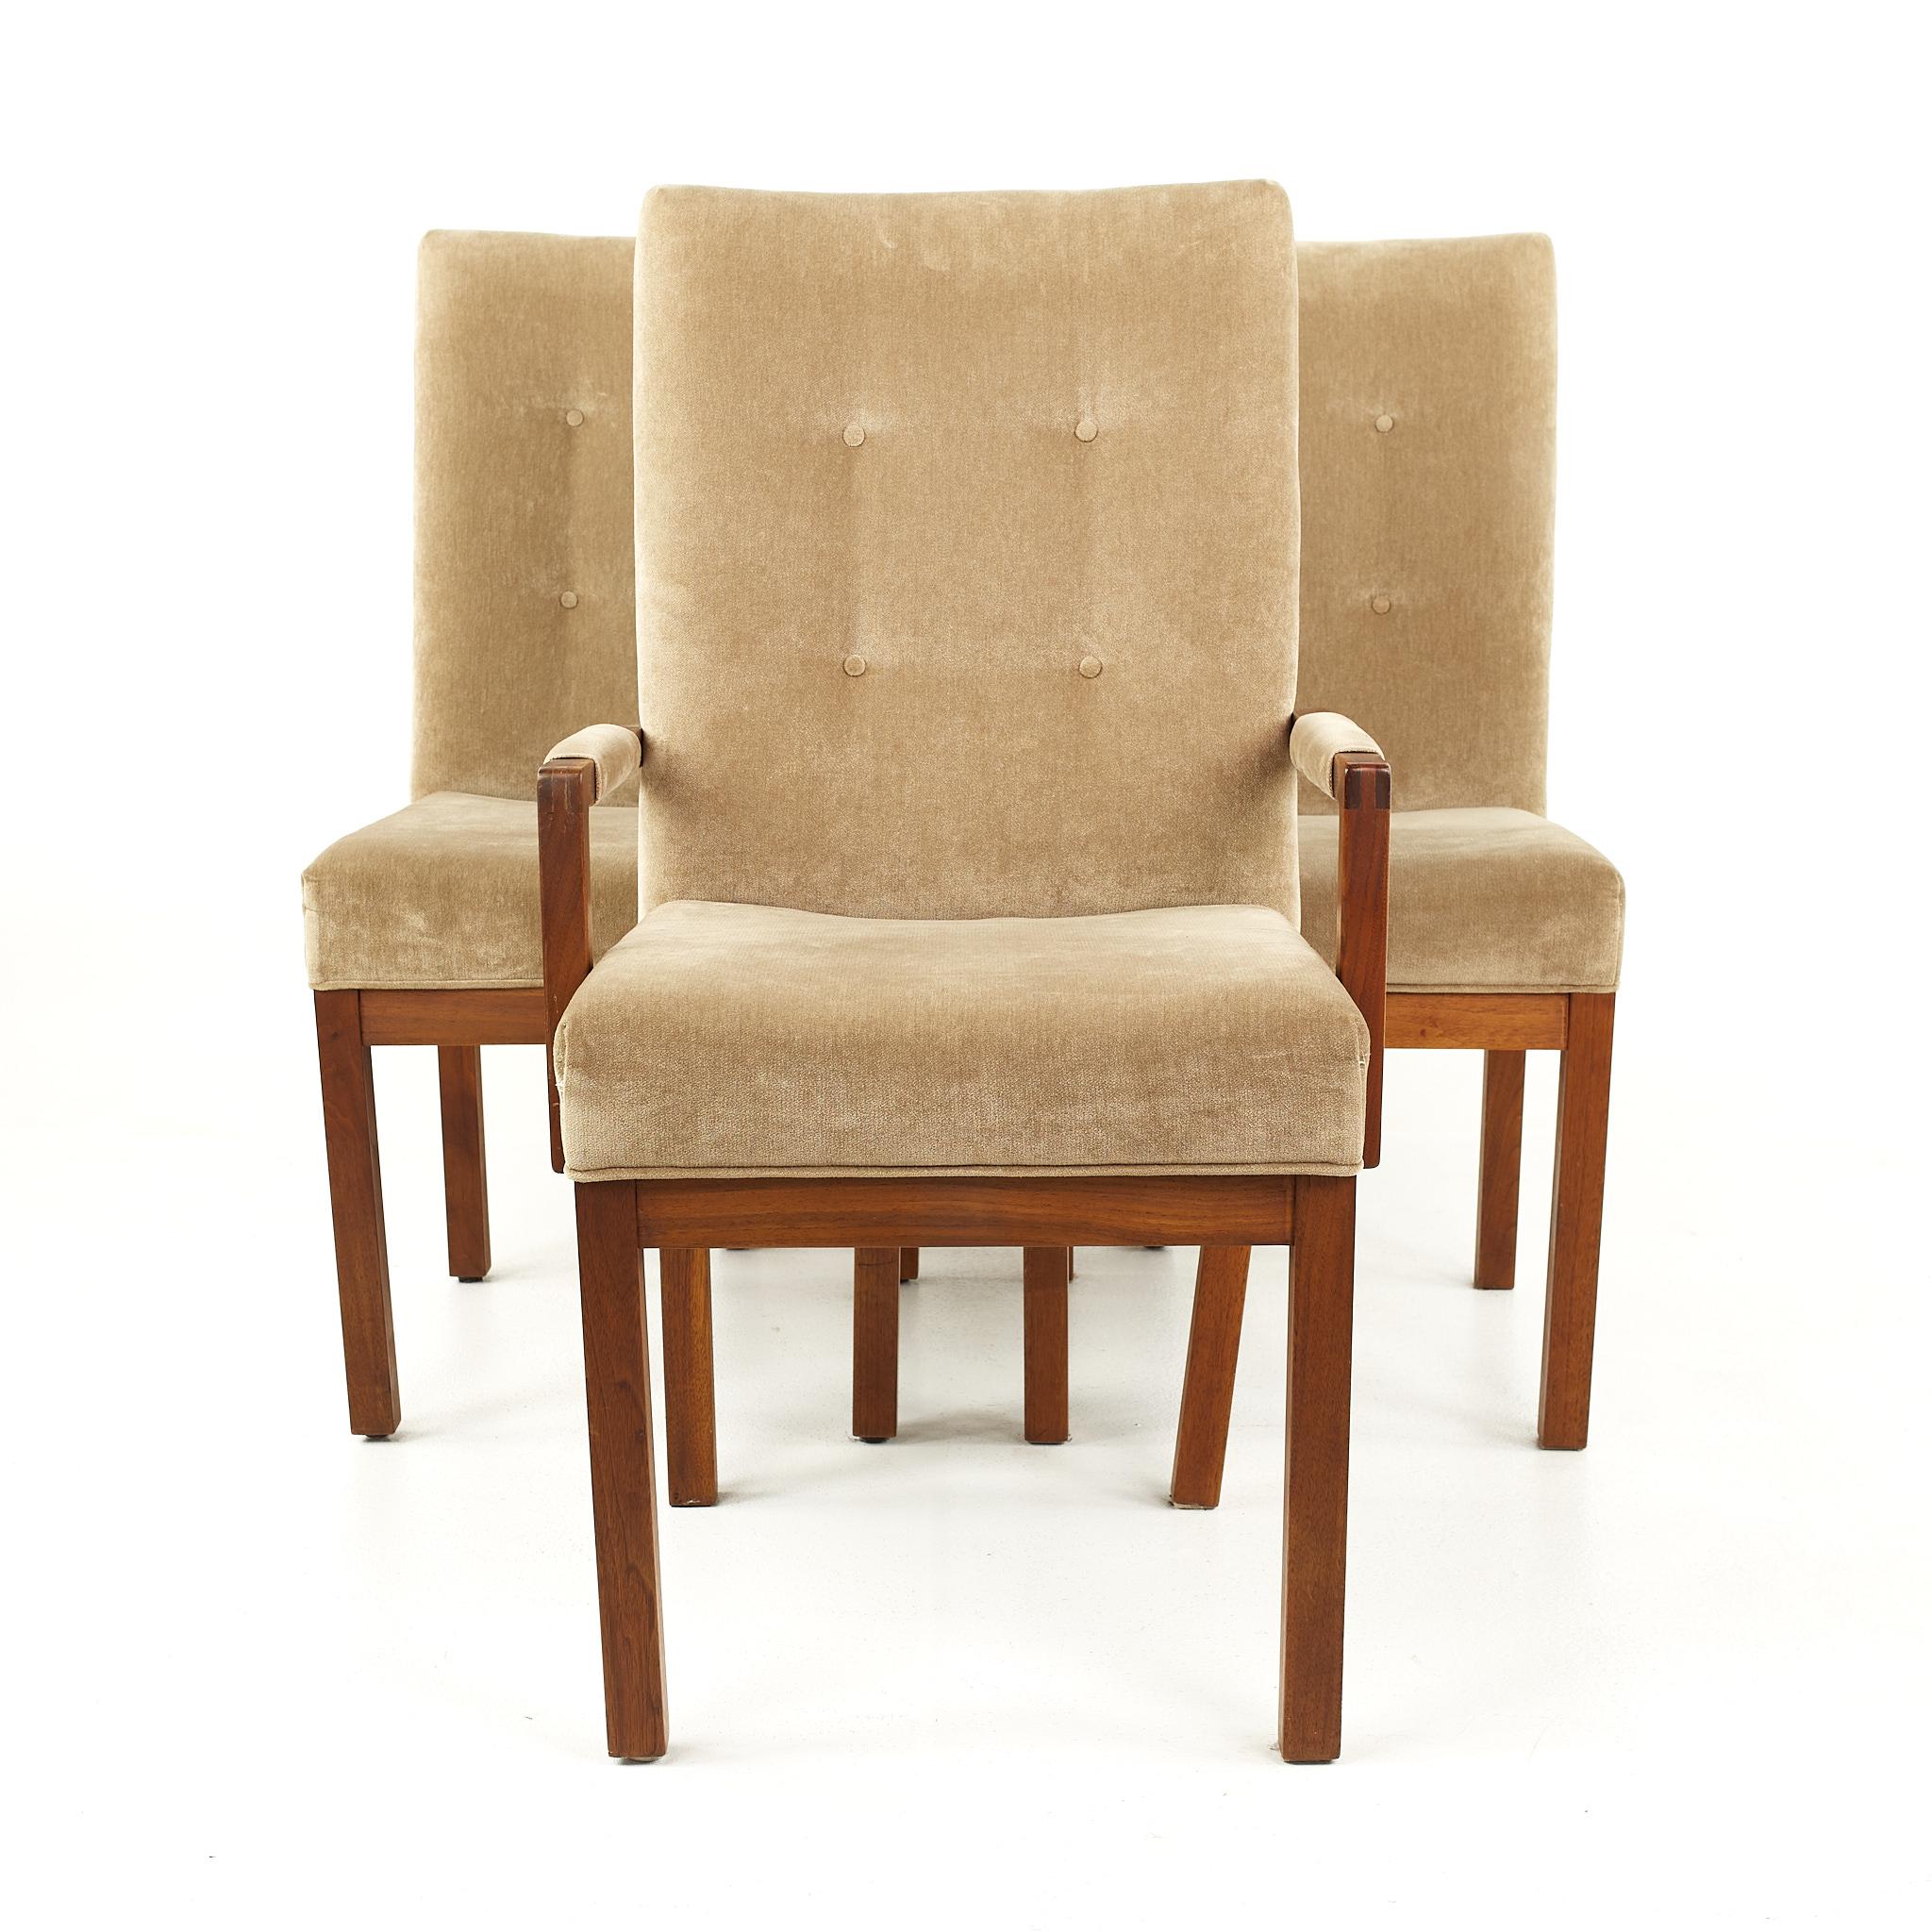 Dillingham Mid Century Walnuss getuftete Esszimmerstühle - 4er Set

Jeder Stuhl misst: 20 breit x 22 tief x 41 Zoll hoch, mit einer Sitzhöhe von 19,5 und Armhöhe von 24,75 Zoll

Alle Möbelstücke sind in einem so genannten restaurierten